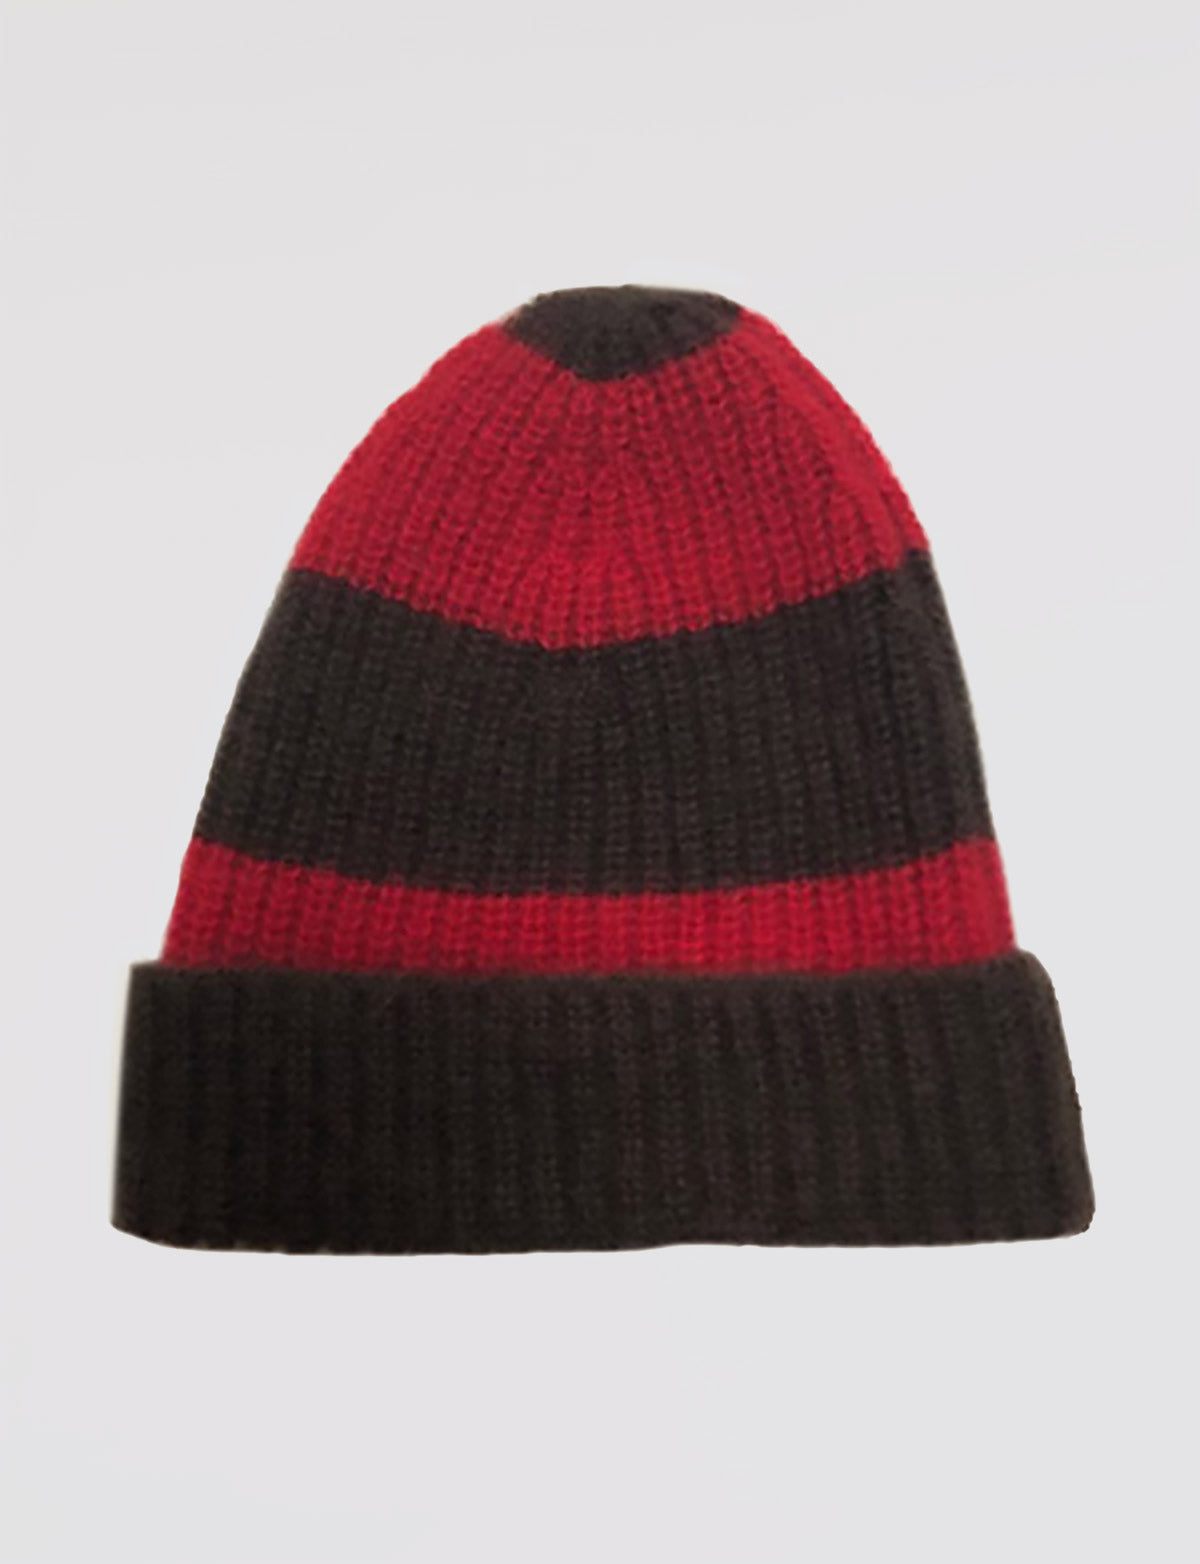 Mütze – Damen, Herbst/Winter – Wolle und Kaschmir – 100 % Made in Italy | Brunella Gori